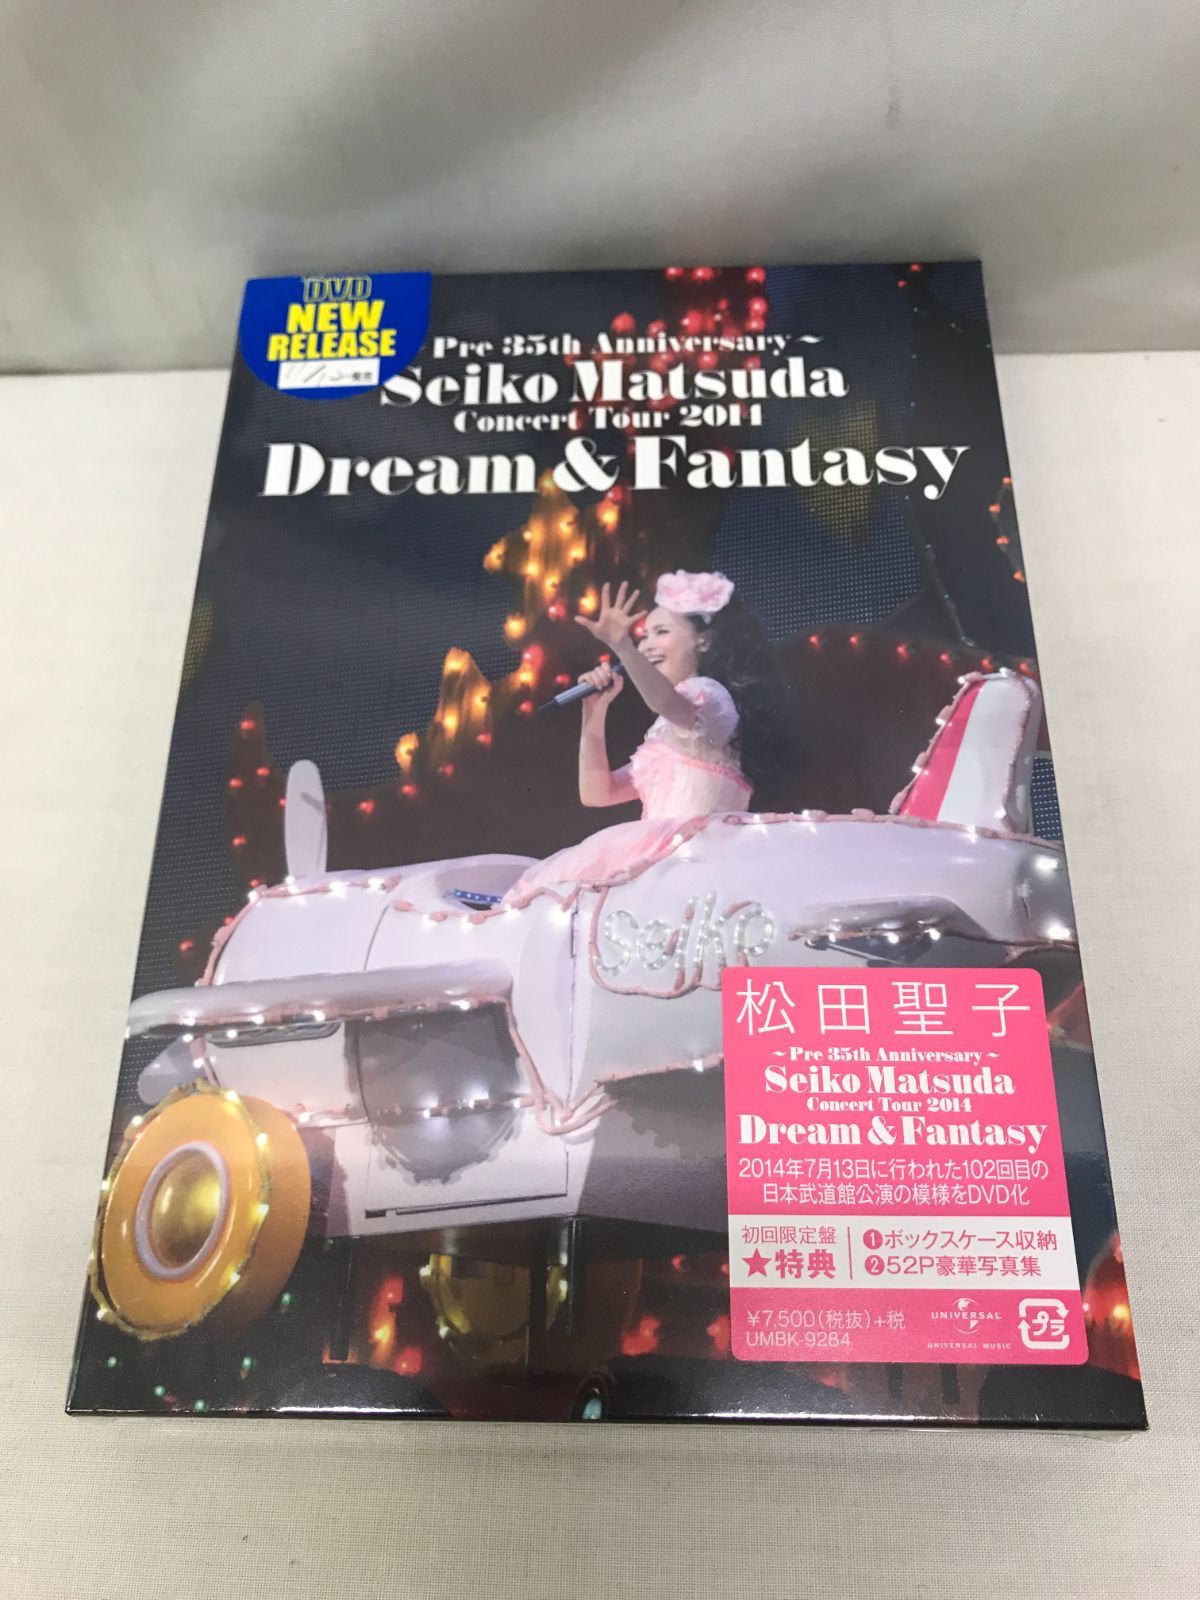 ~Pre 35th Anniversary~ Seiko Matsuda Concert Tour 2014 Dream & Fantasy(品)